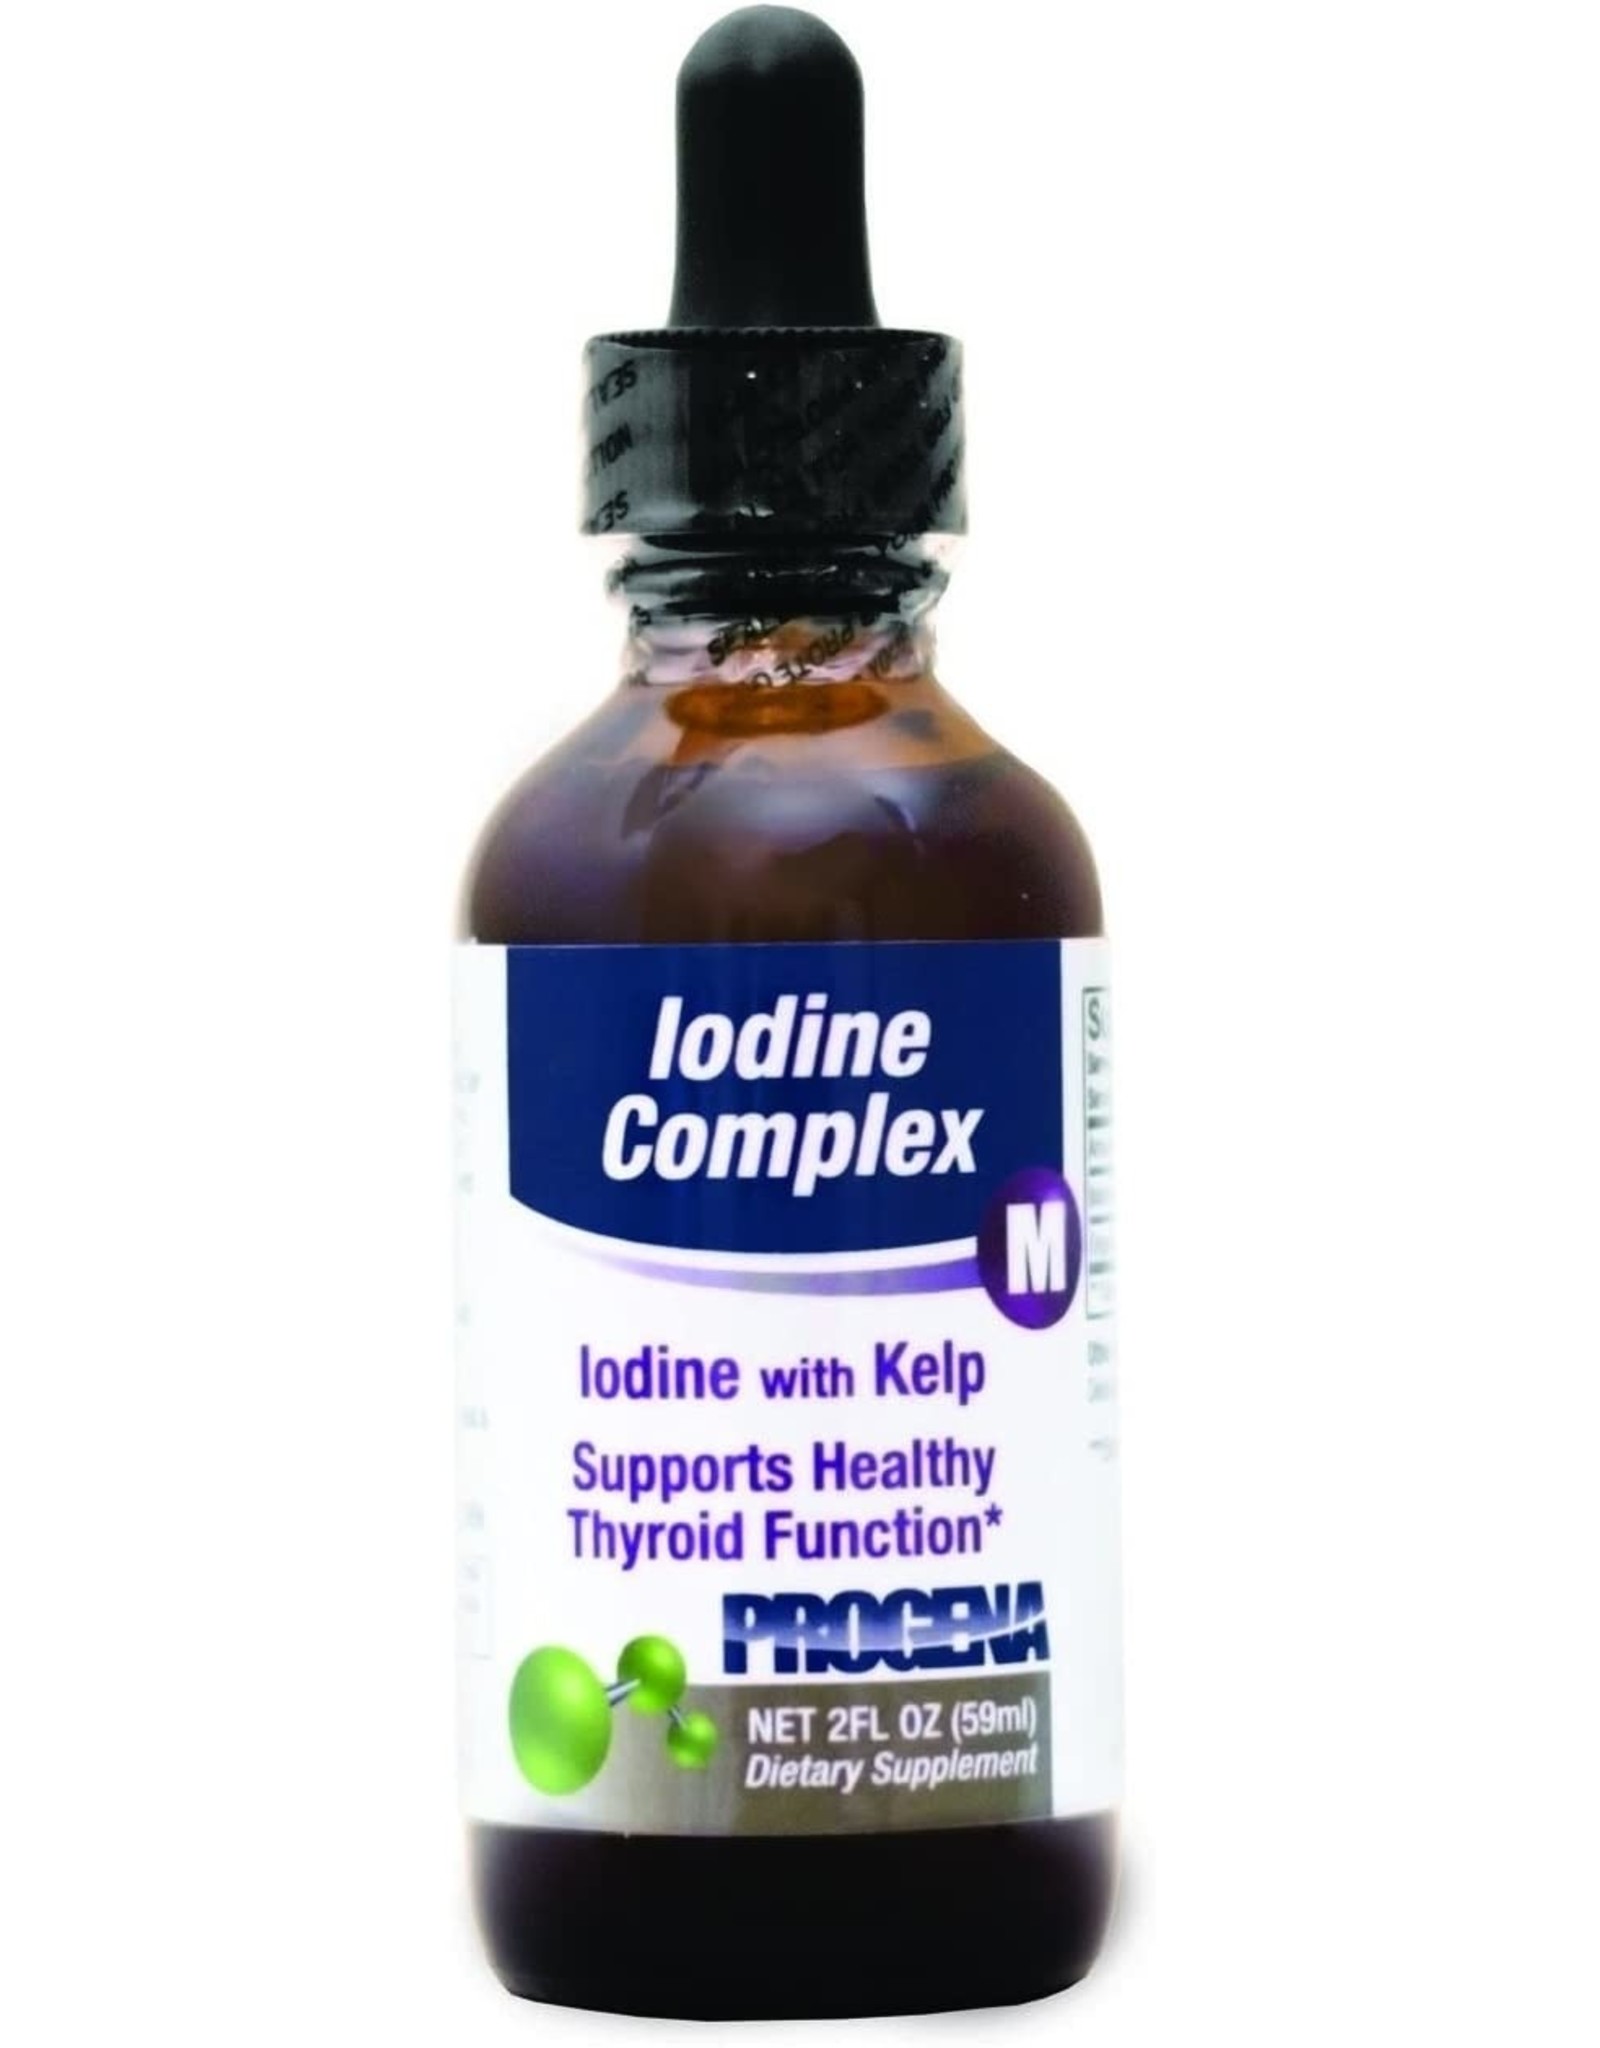 Iodine Complex 2oz drops